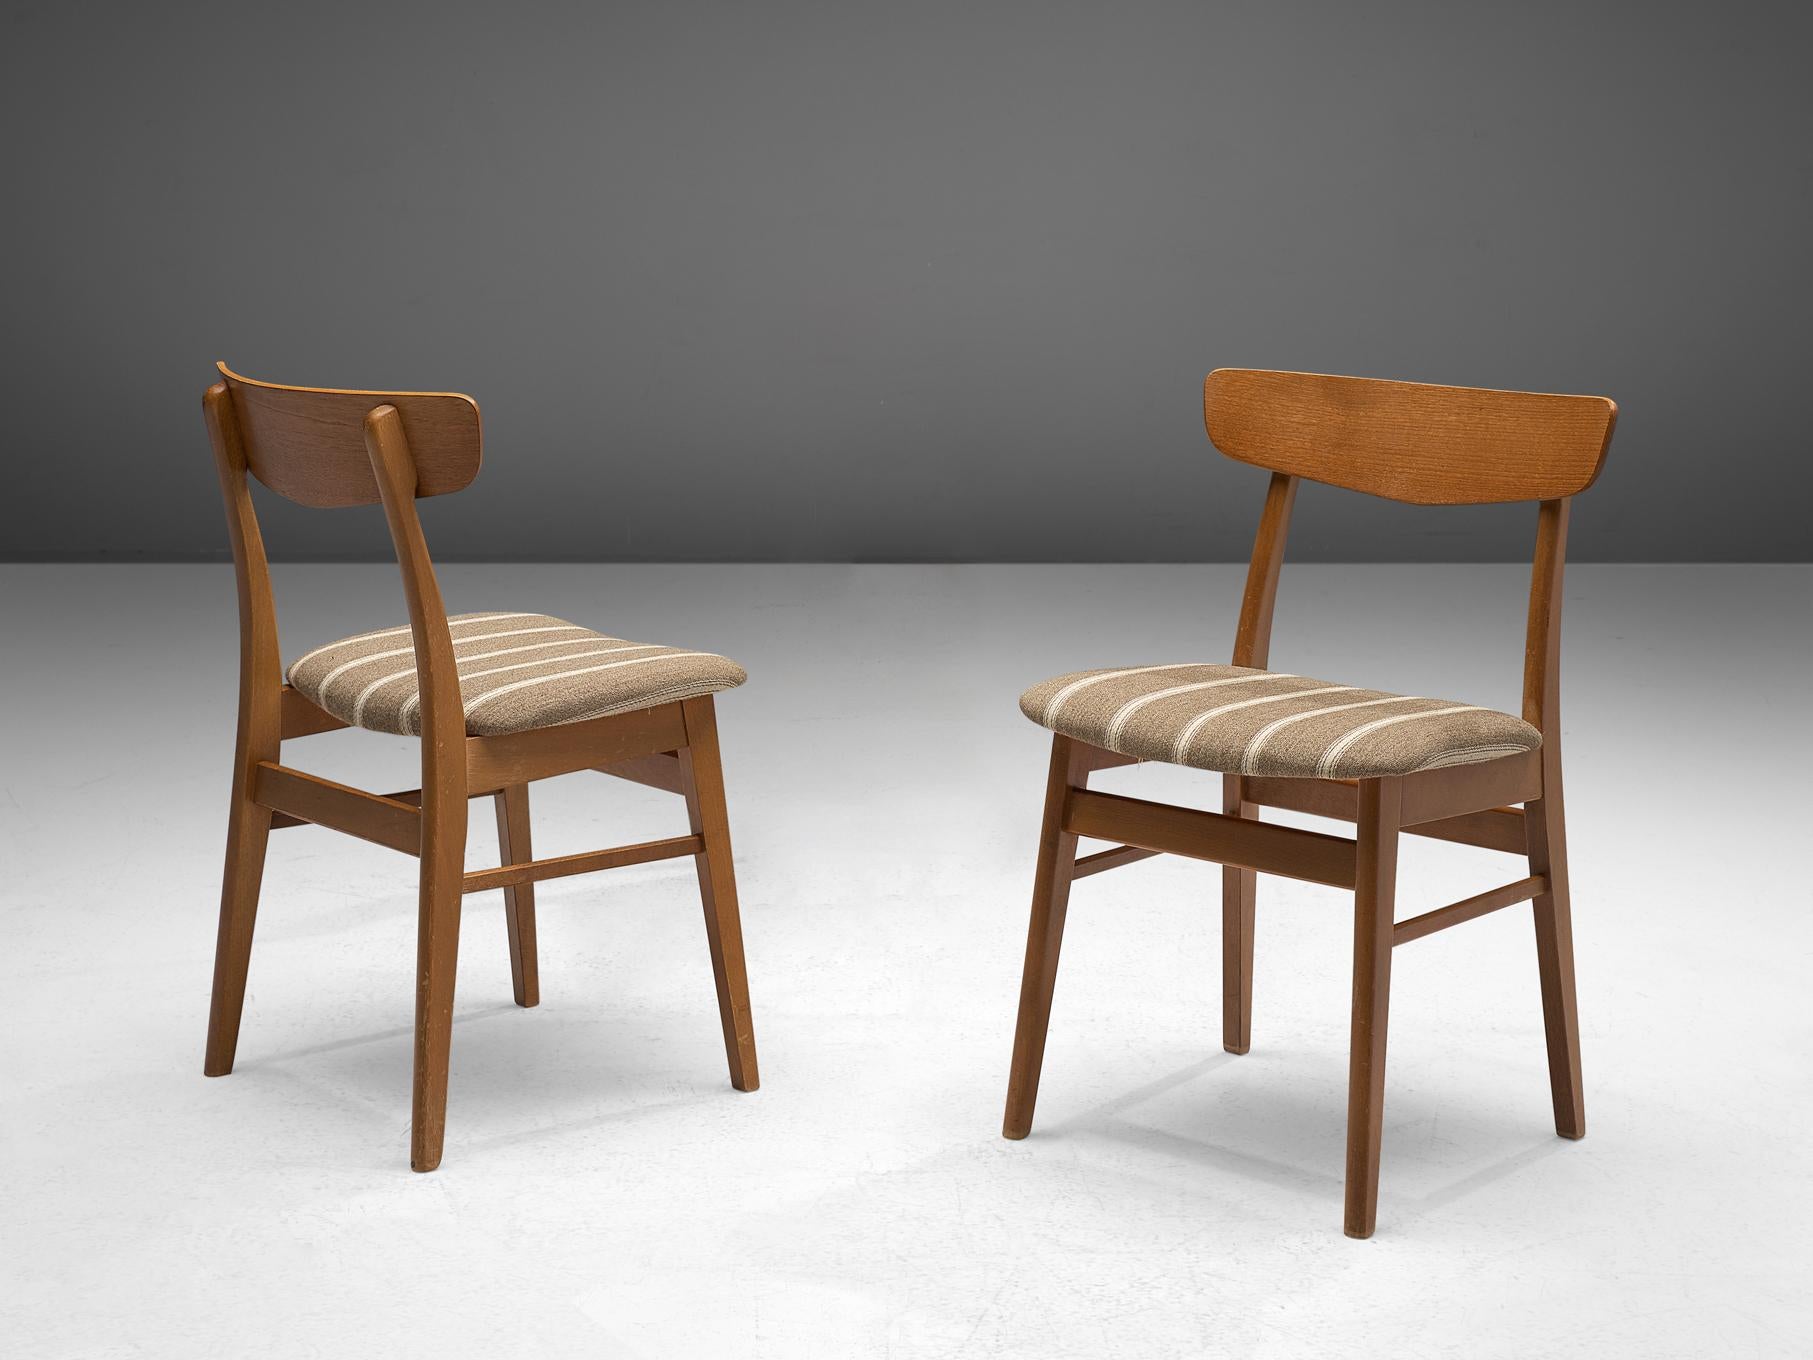 Esszimmerstühle aus Teakholz, Dänemark, 1960er Jahre

Diese gut verarbeiteten dänischen Esszimmerstühle überzeugen durch ihr Aussehen und ihre Konstruktion, die typisch für Möbel im dänischen Stil der 1960er Jahre ist und Ähnlichkeiten mit den